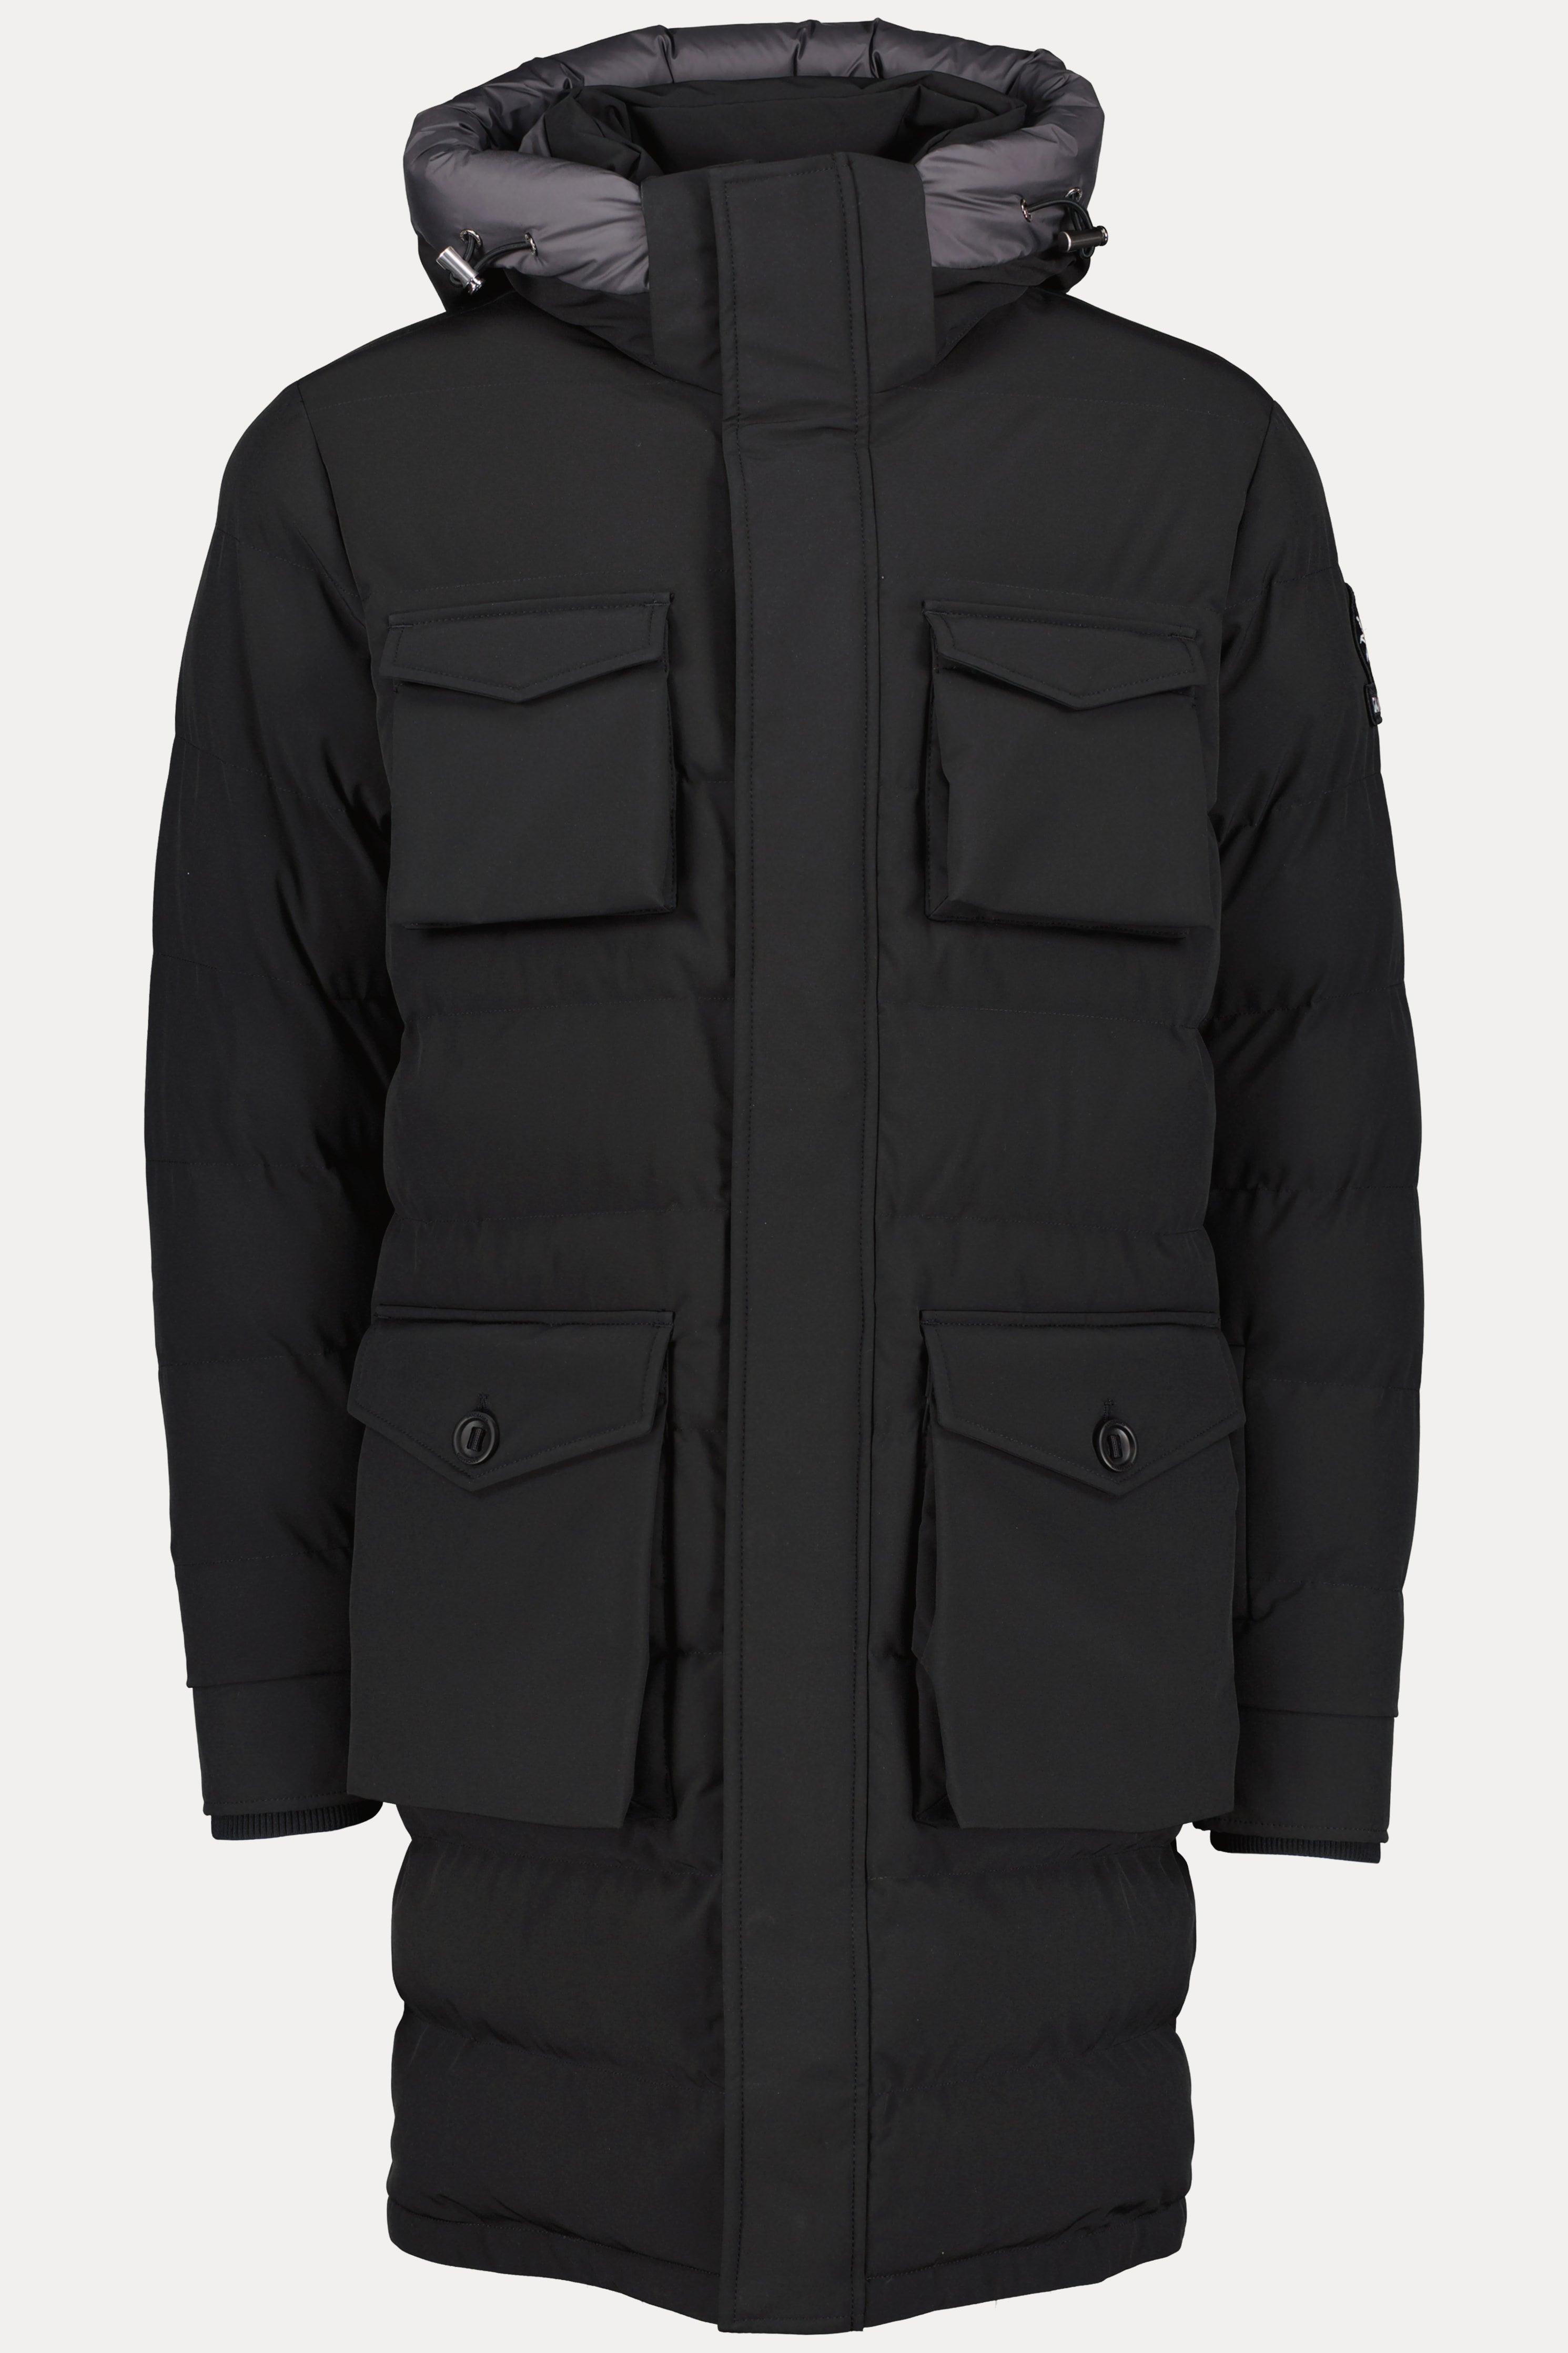 Sandbanks Men's Branksome Black Long Puffer Jacket for Men | Lyst UK